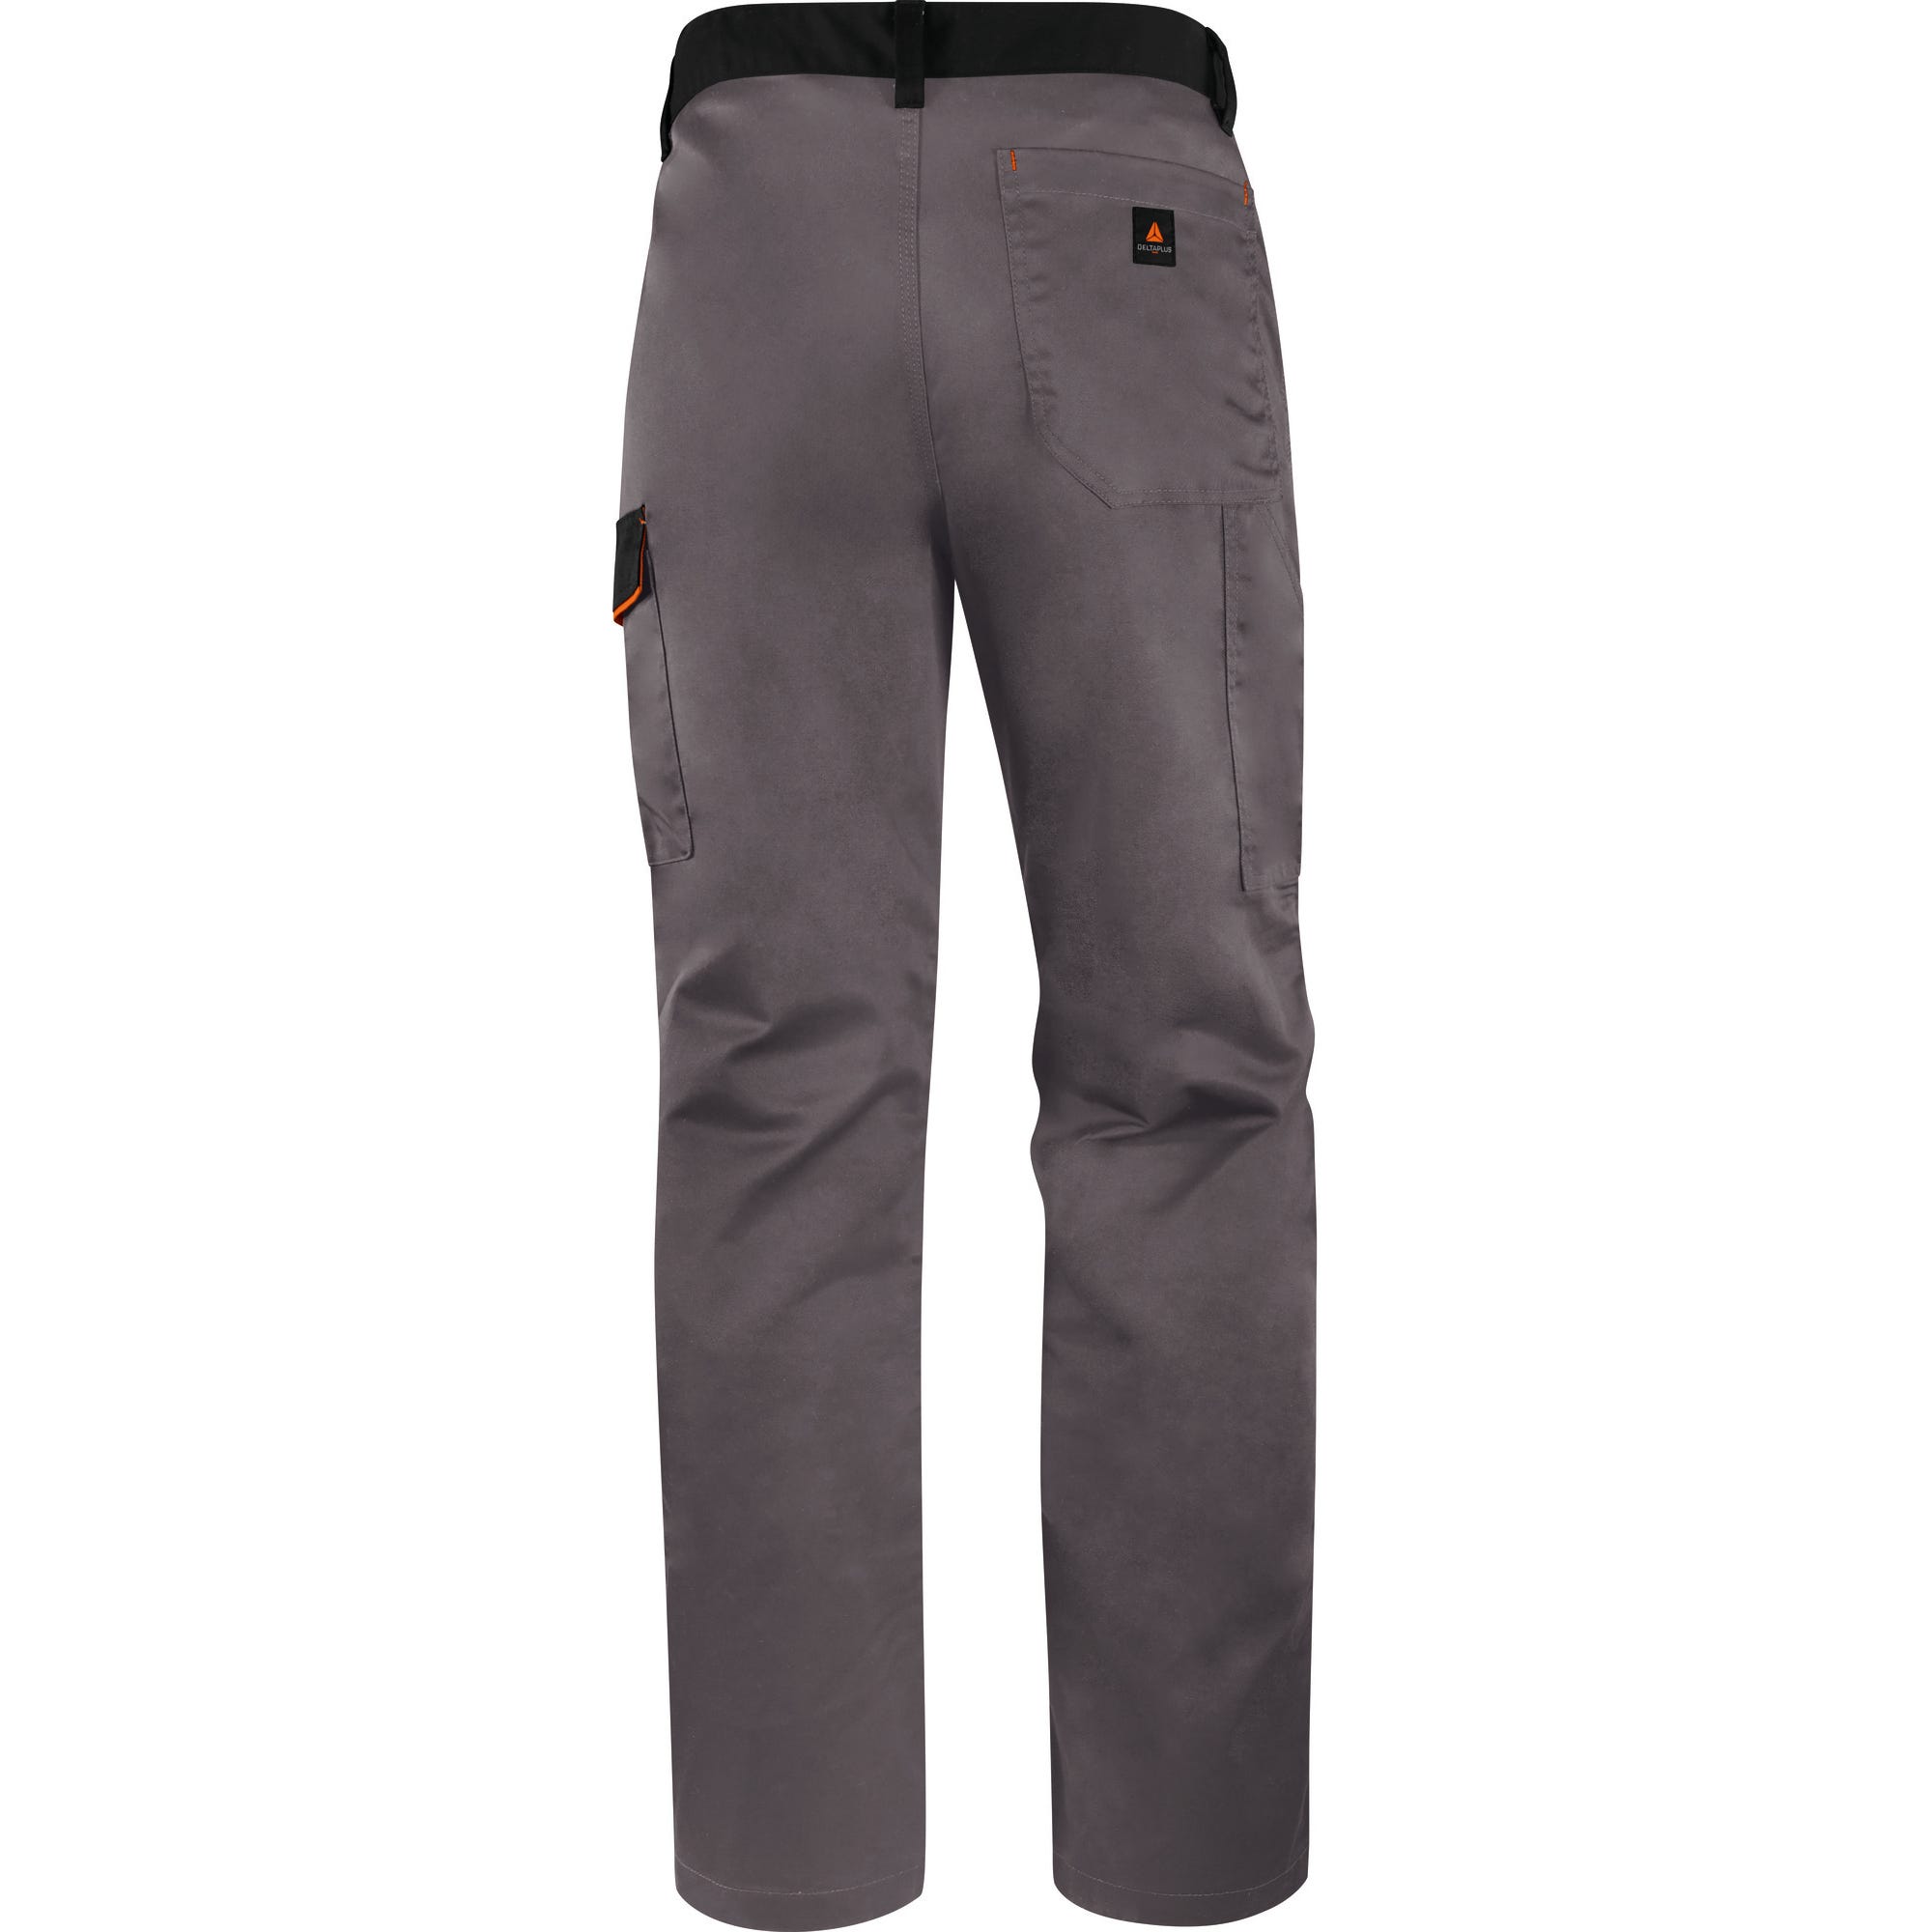 Pantalon de travail gris/orange T.S M1PA2 - DELTA PLUS 1